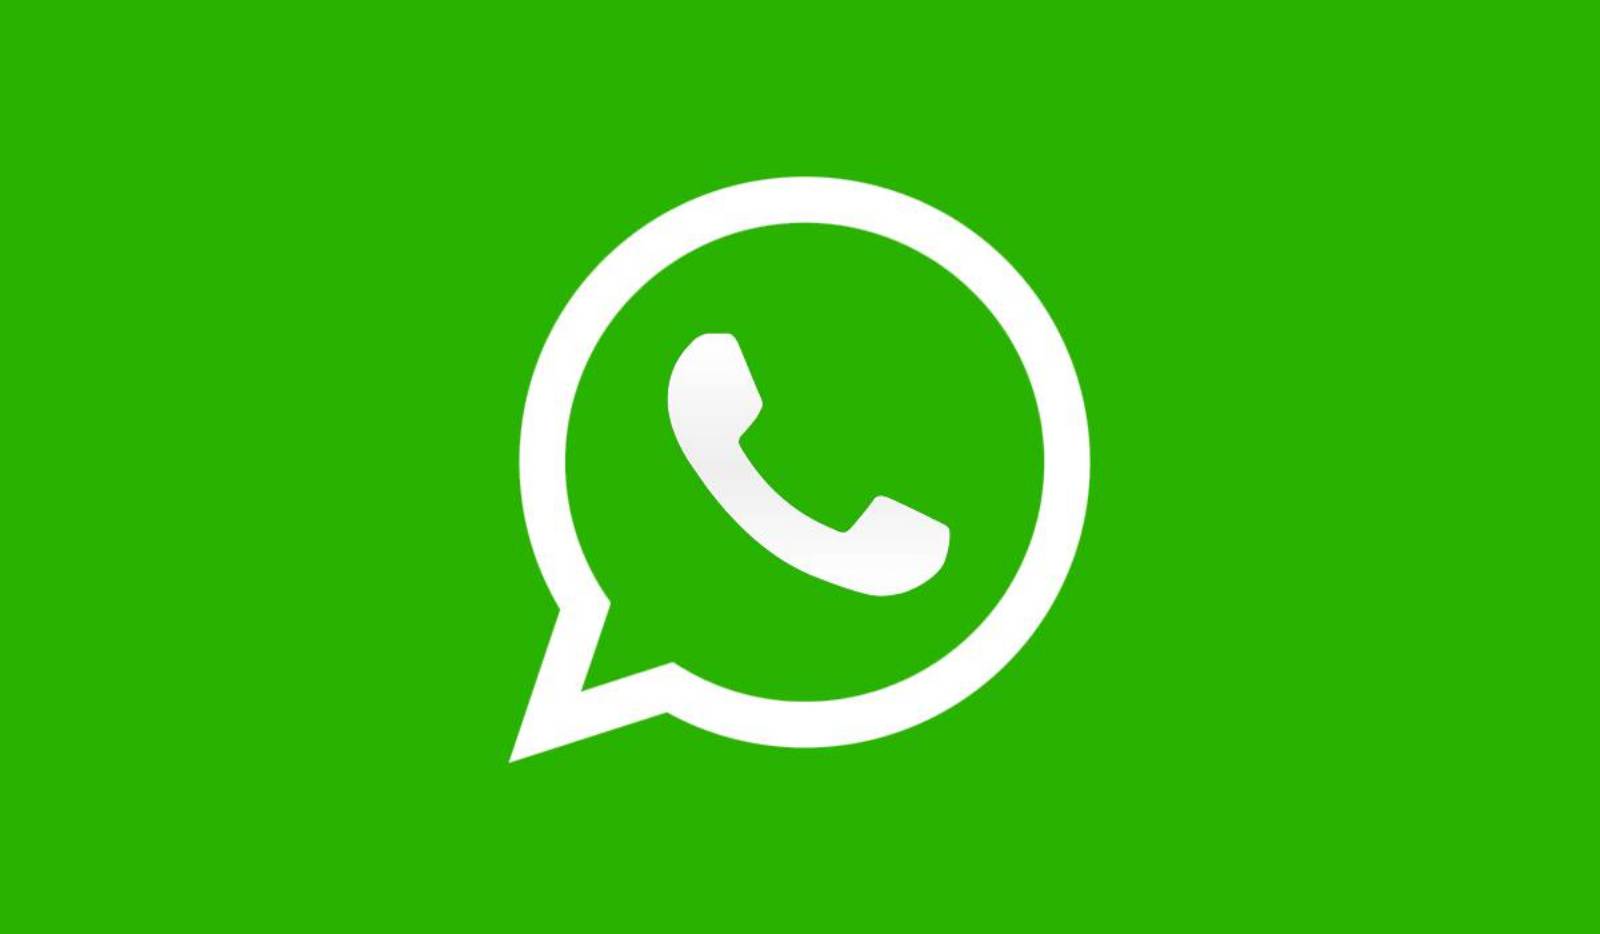 WhatsApp. ¡CUIDADOSO! PROBLEMA MUY GRAVE para los Teléfonos